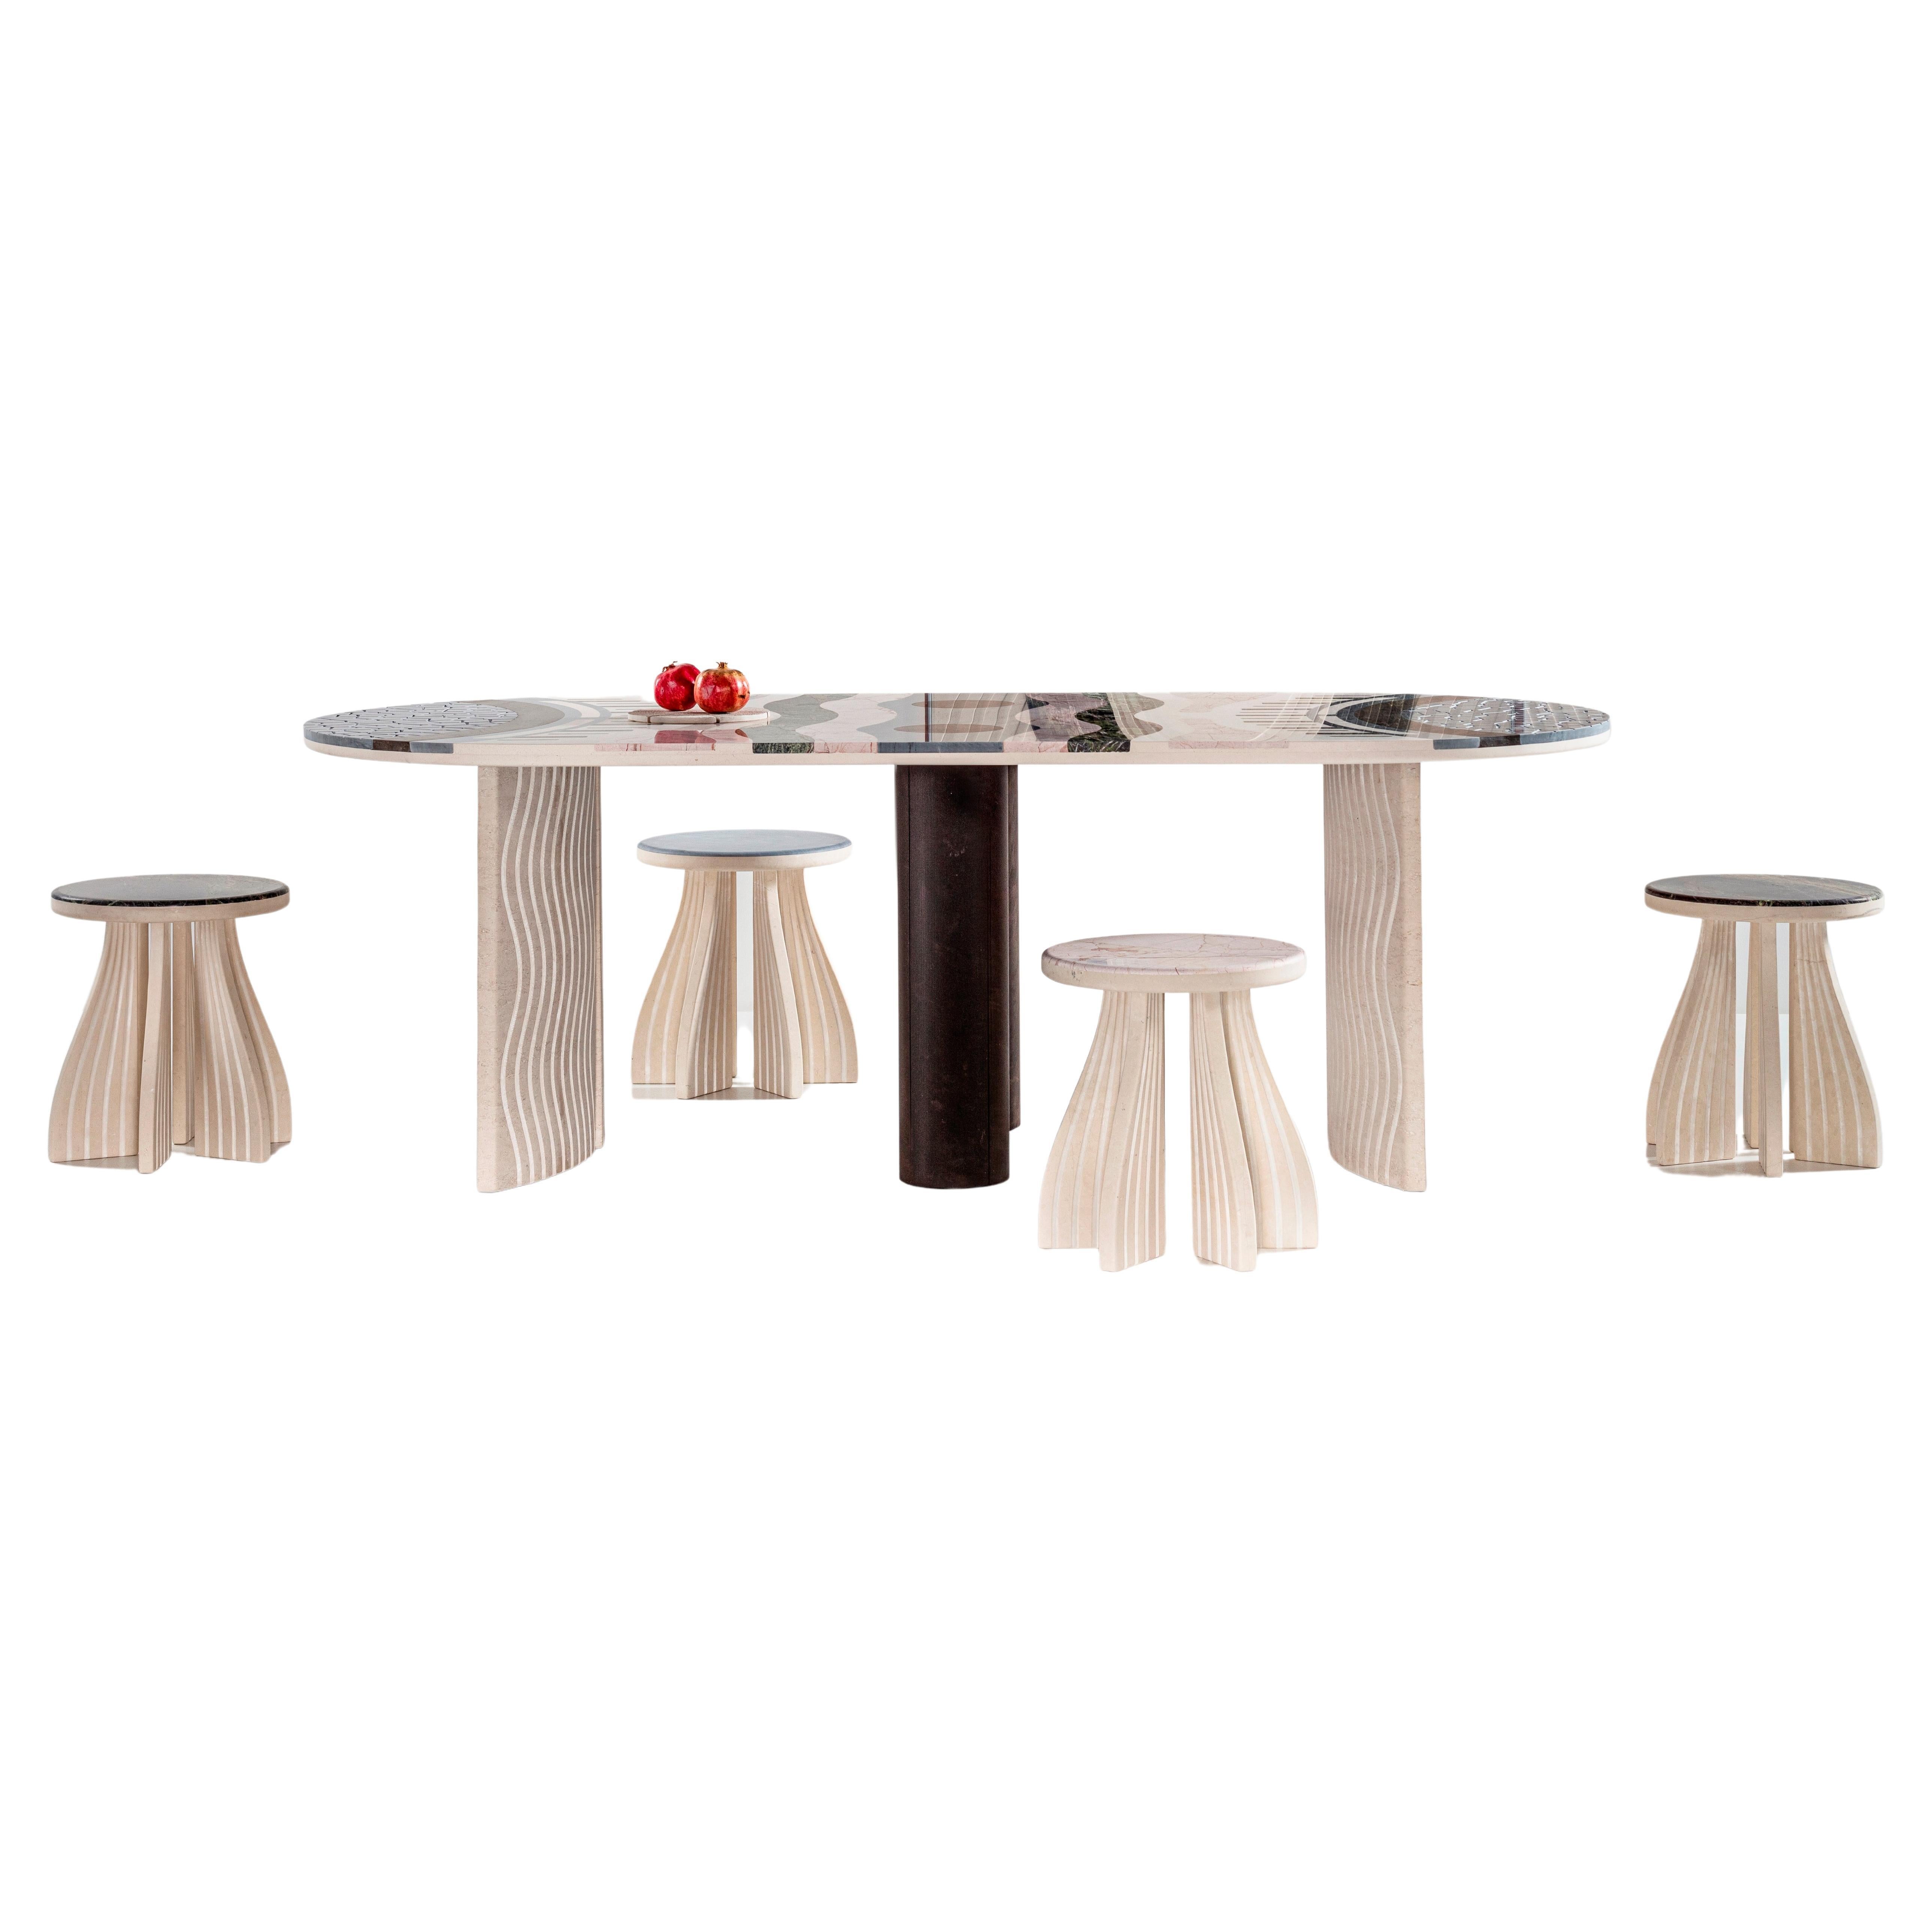 Lithea / Specchio DI Venere Dining Table by Elena Salmistraro Stone Marble White For Sale